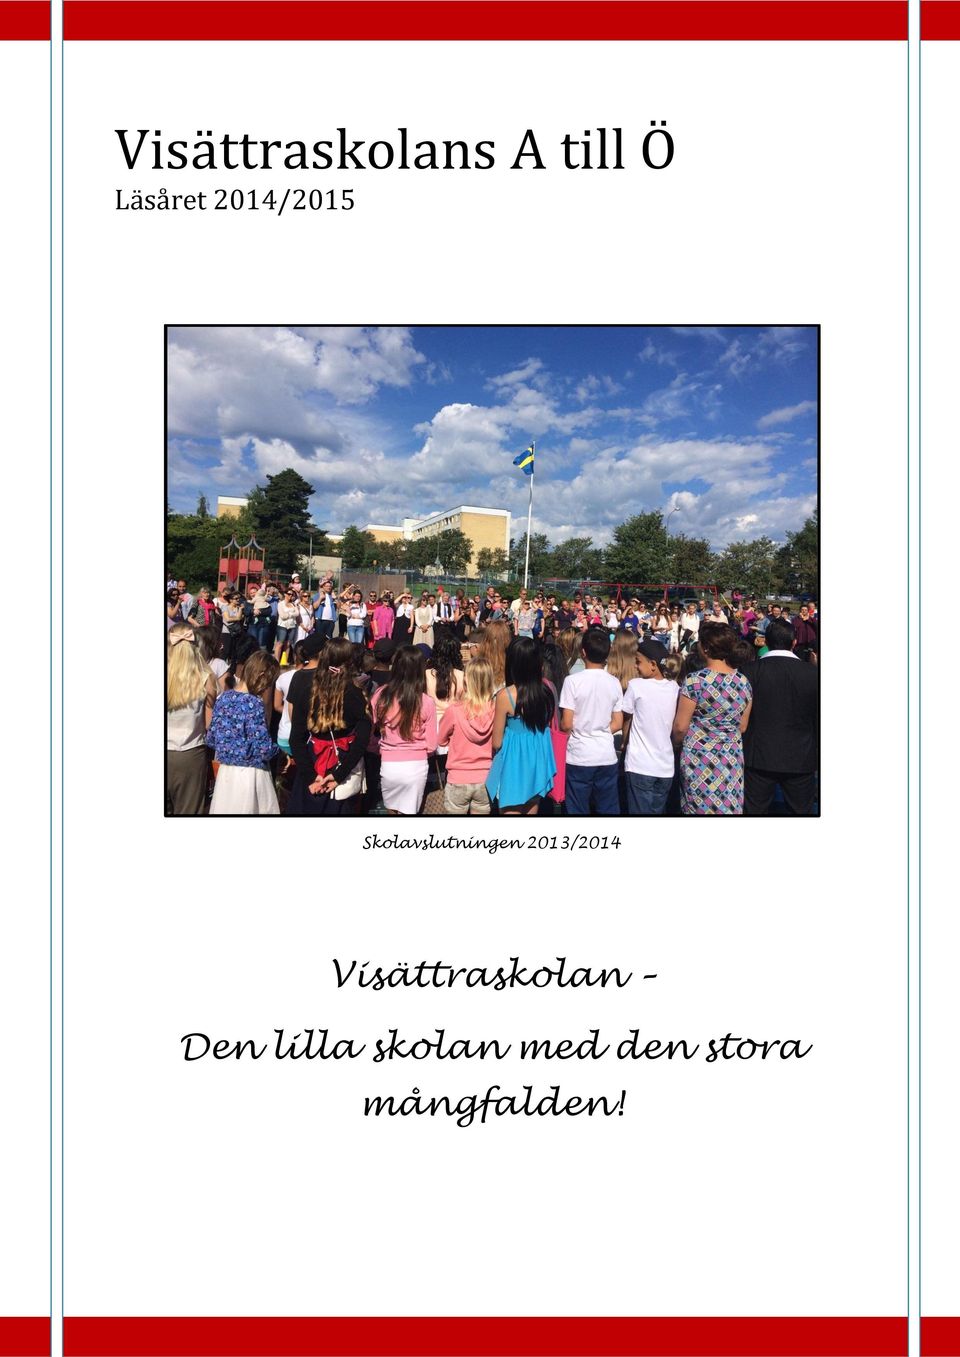 Skolavslutningen 2013/2014